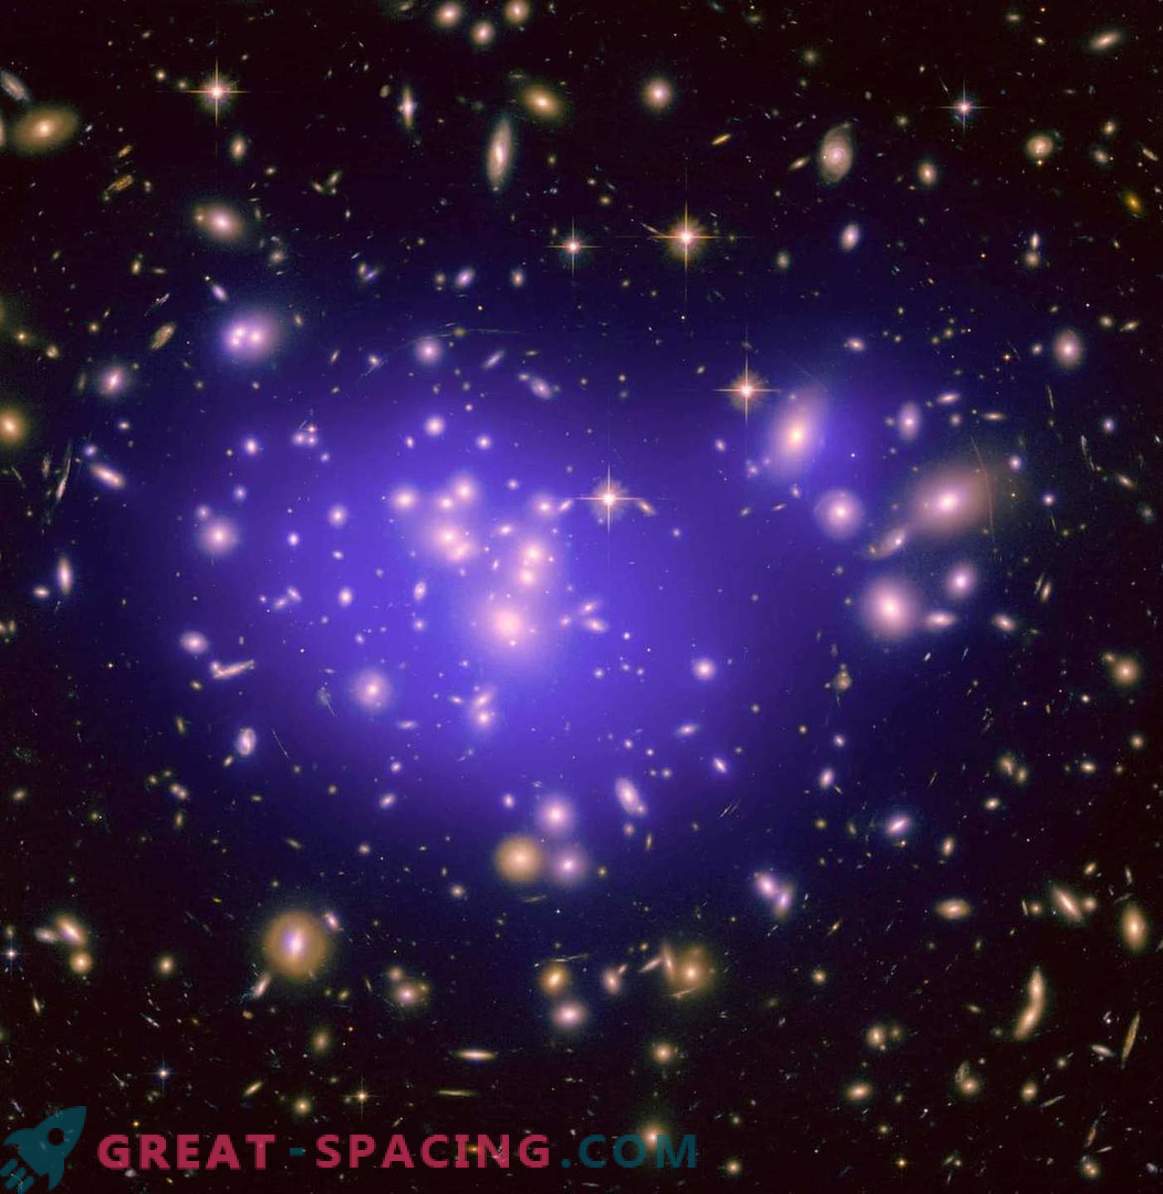 Lo que se originó antes: galaxias o agujeros negros